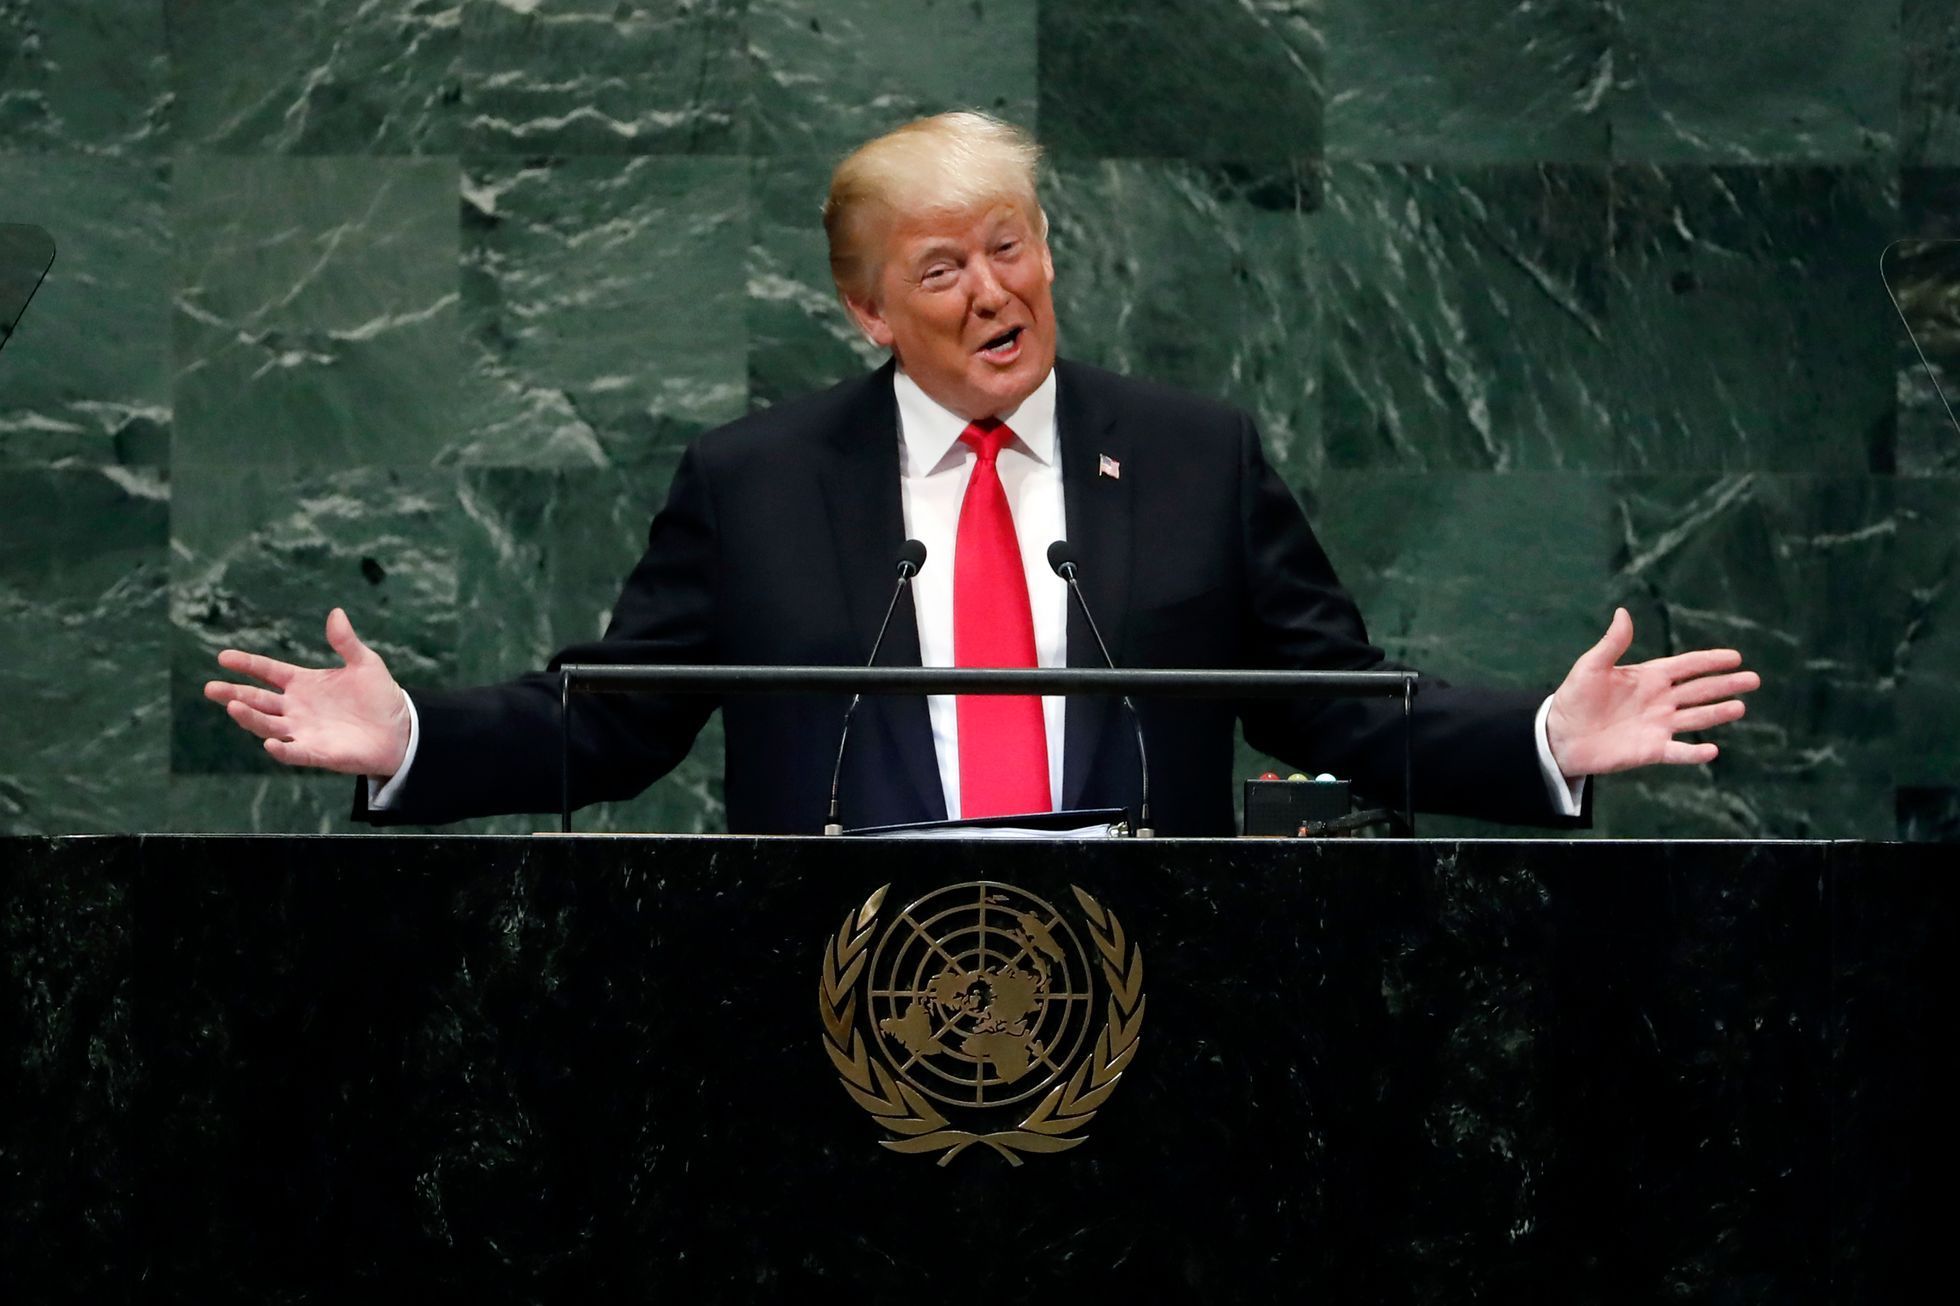 Donald Trump na Valném shromáždění OSN.